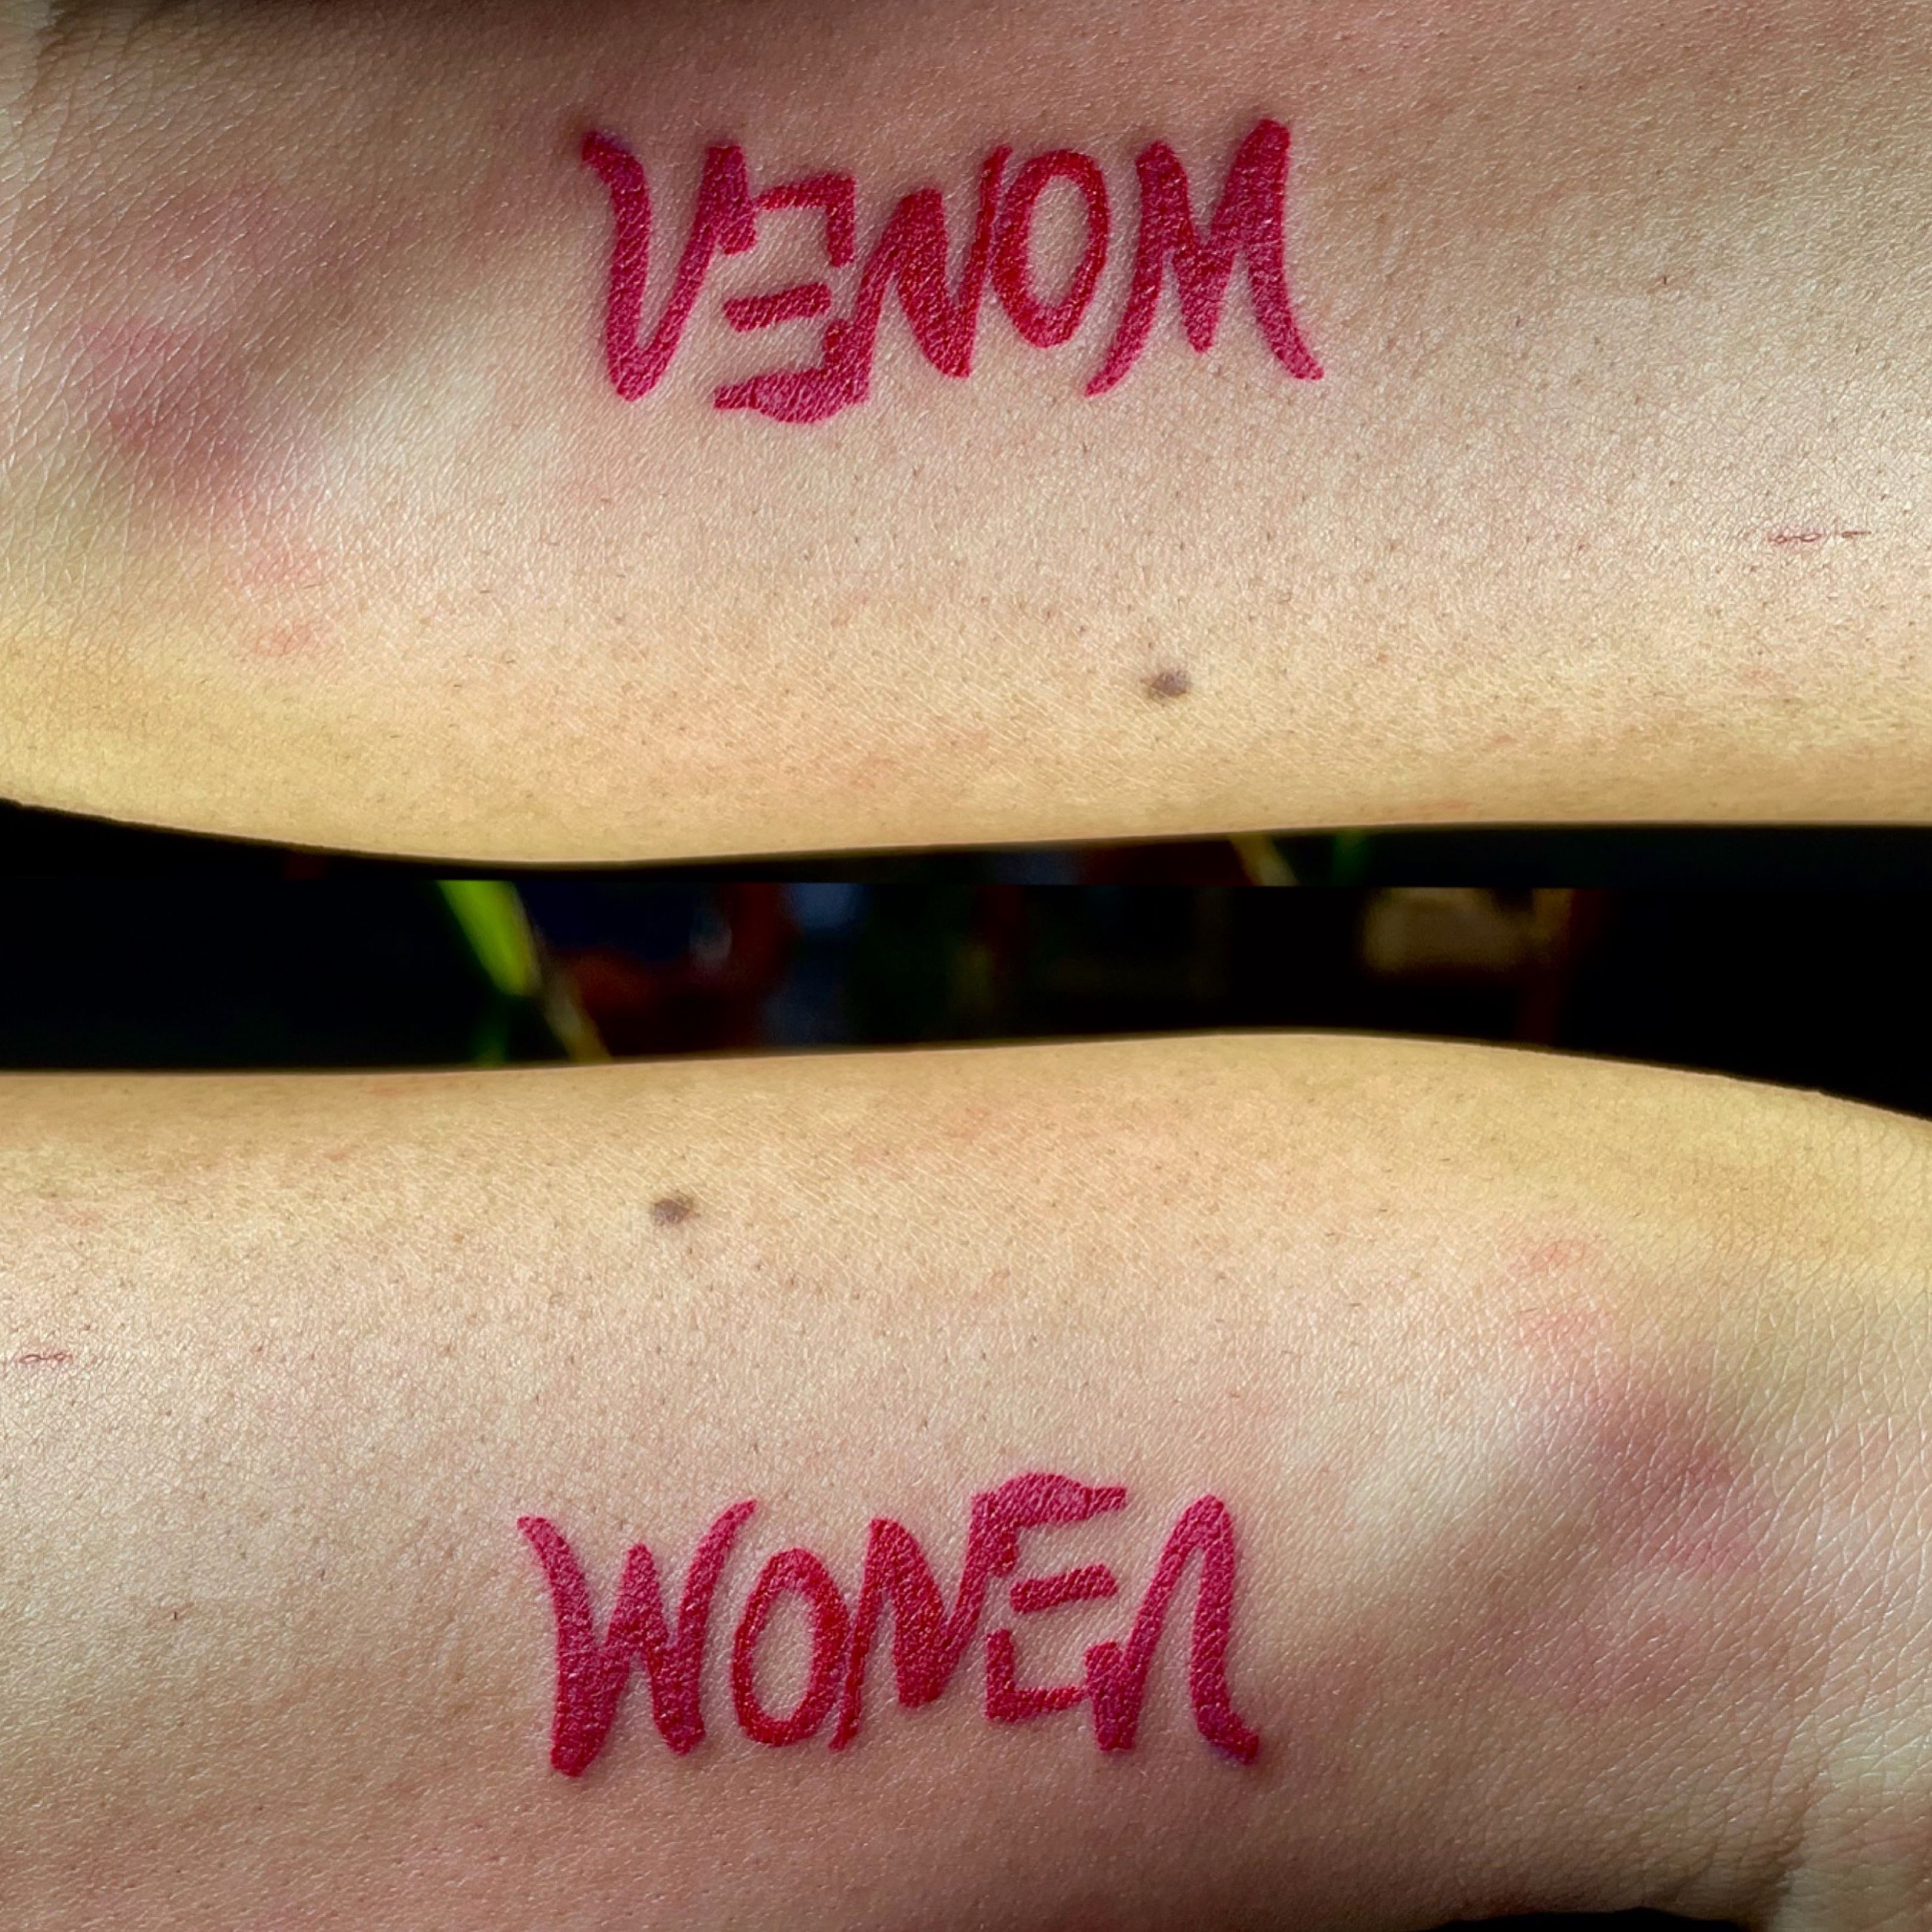 Venom woman tattoo